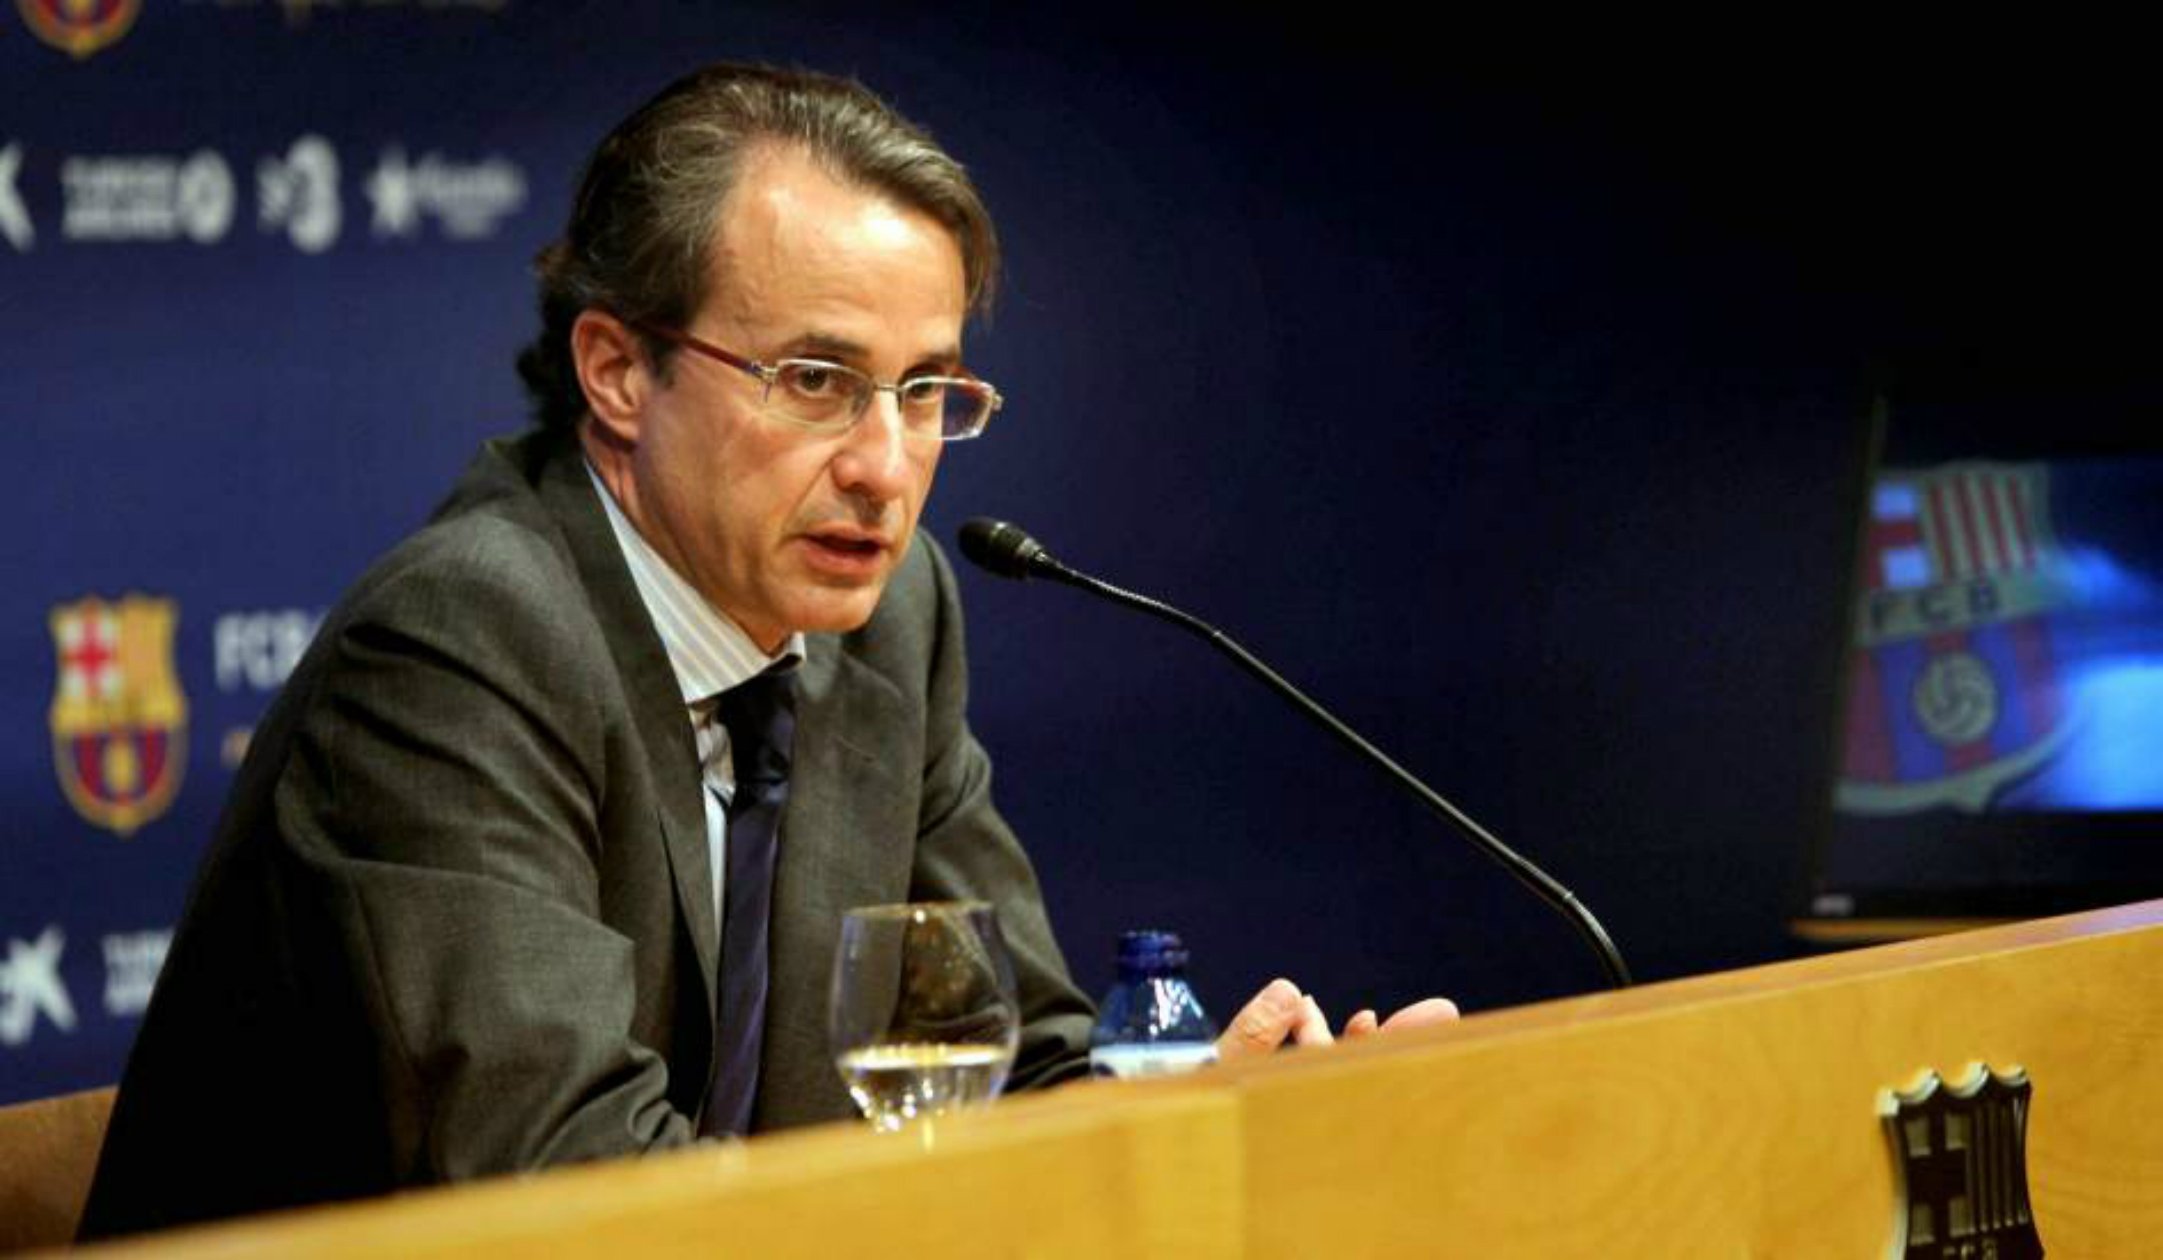 Javier Faus es postula com el successor favorit de Brugera al Cercle d'Economia